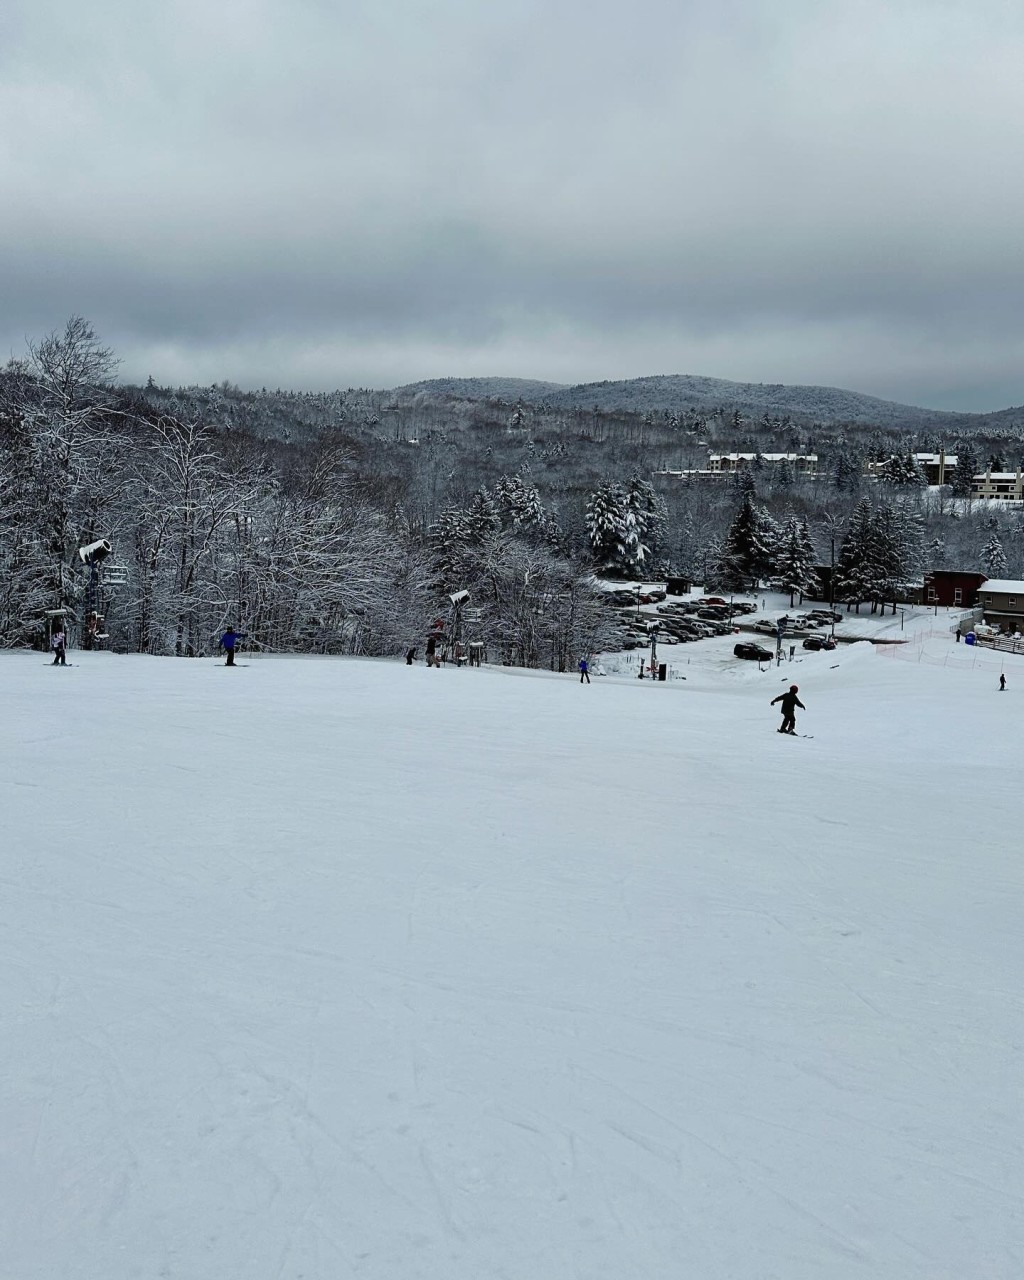 转眼麦大力已飞抵美国佛蒙特（Vermont），其间更前往Mount Snow滑雪。